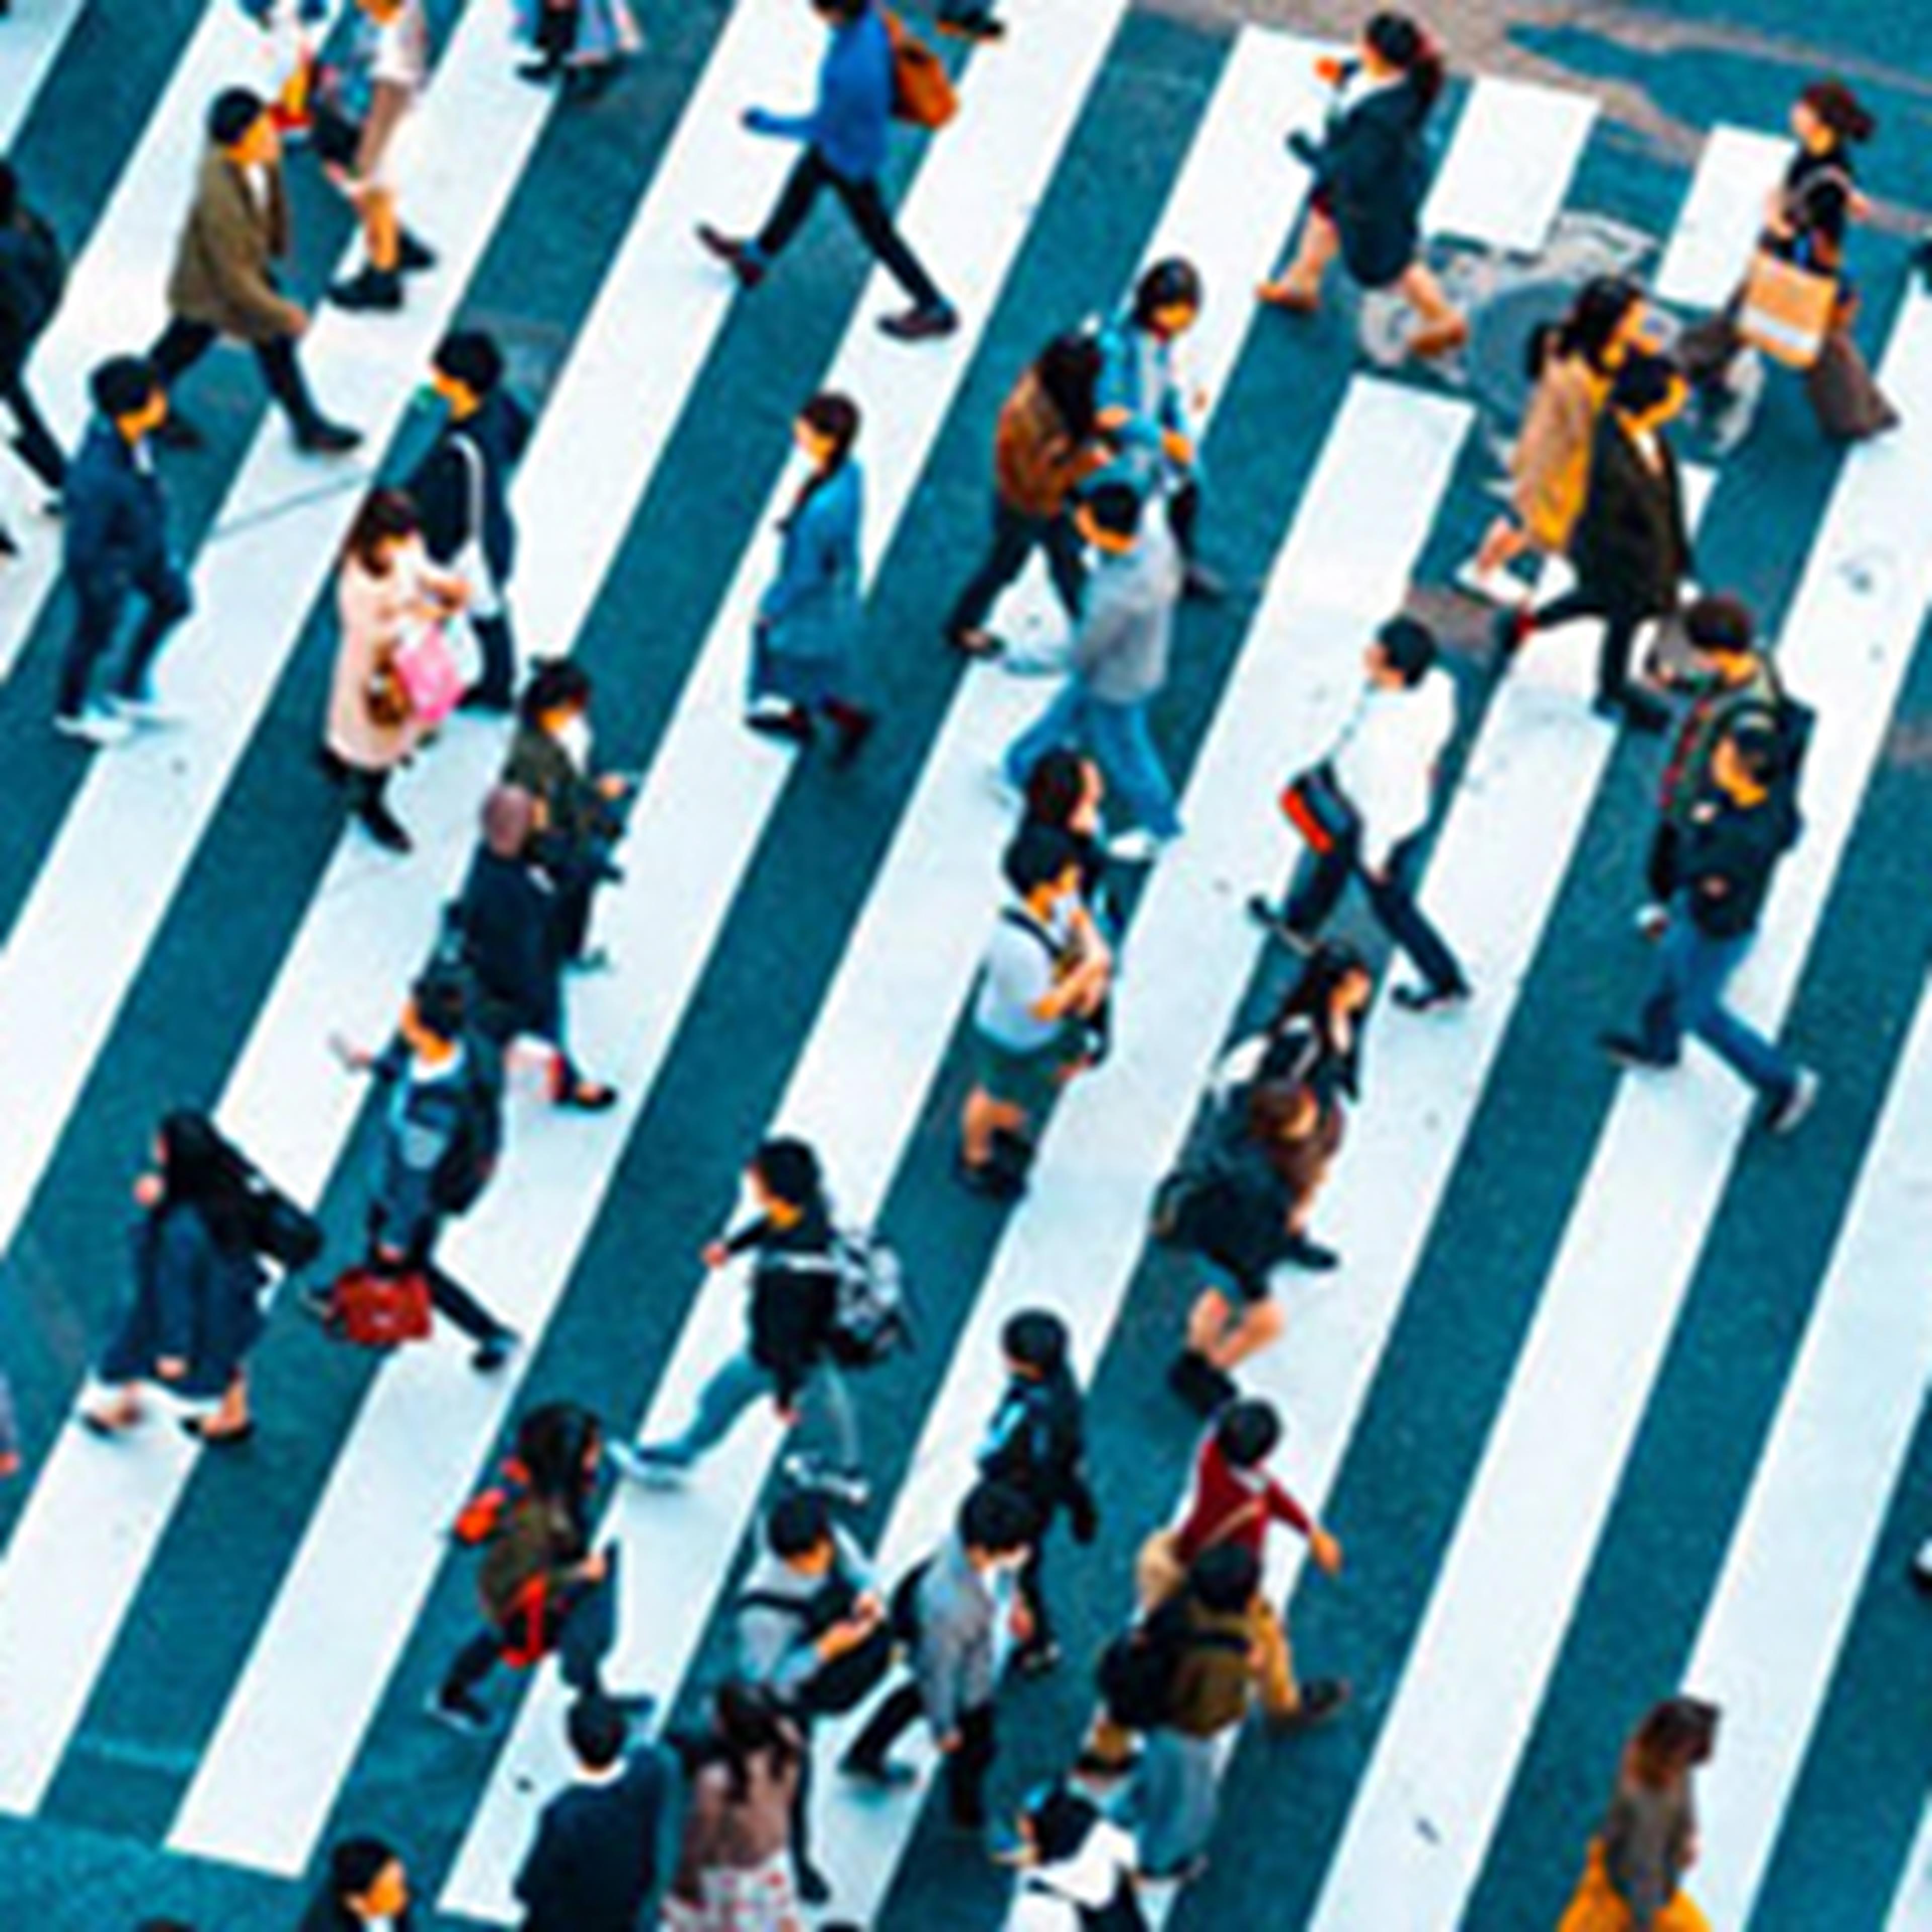 Overhead view of people walking across a crosswalk